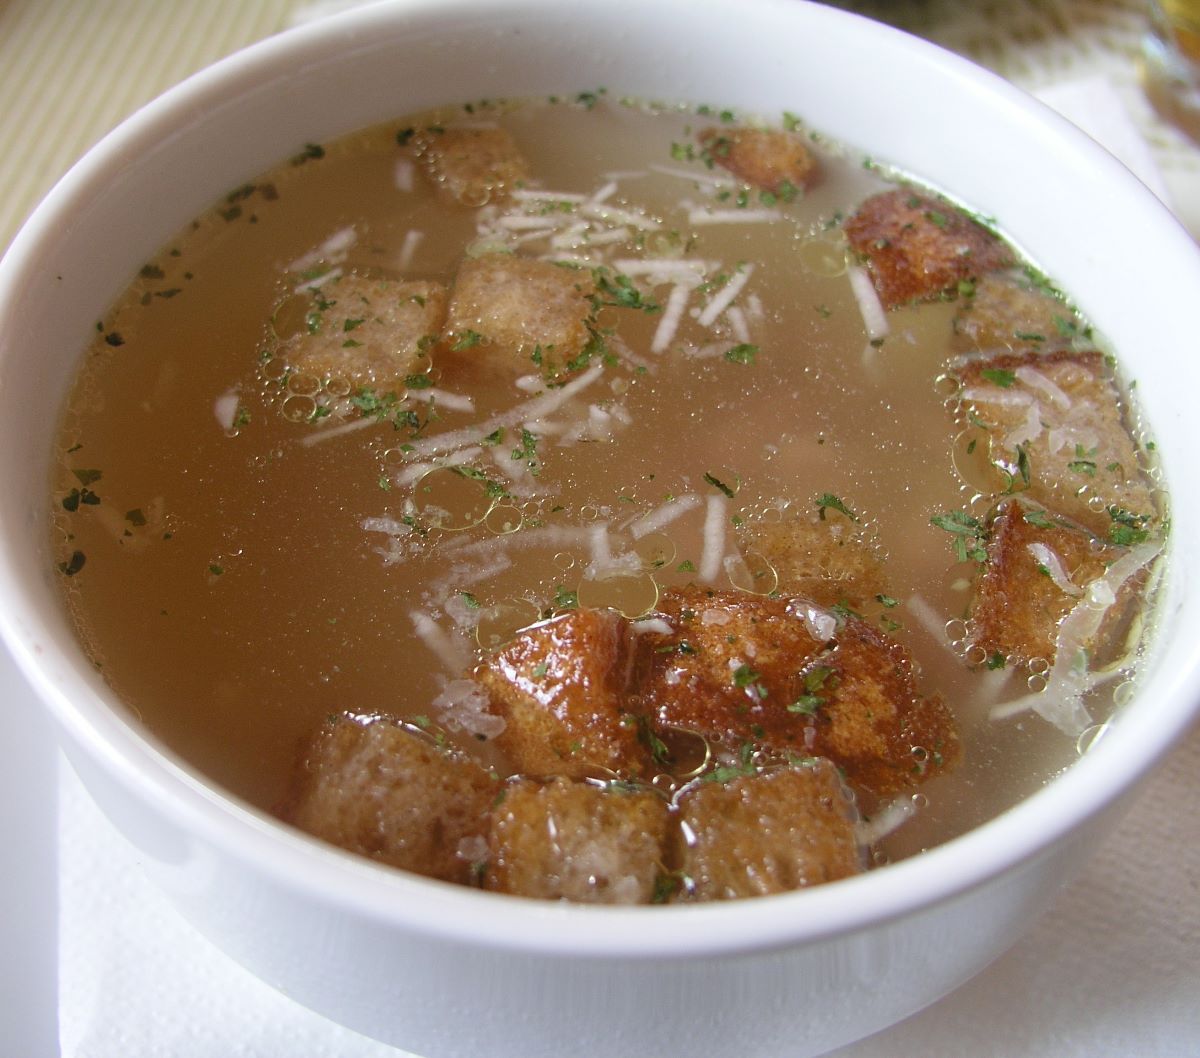  Cesnecka garlic soup